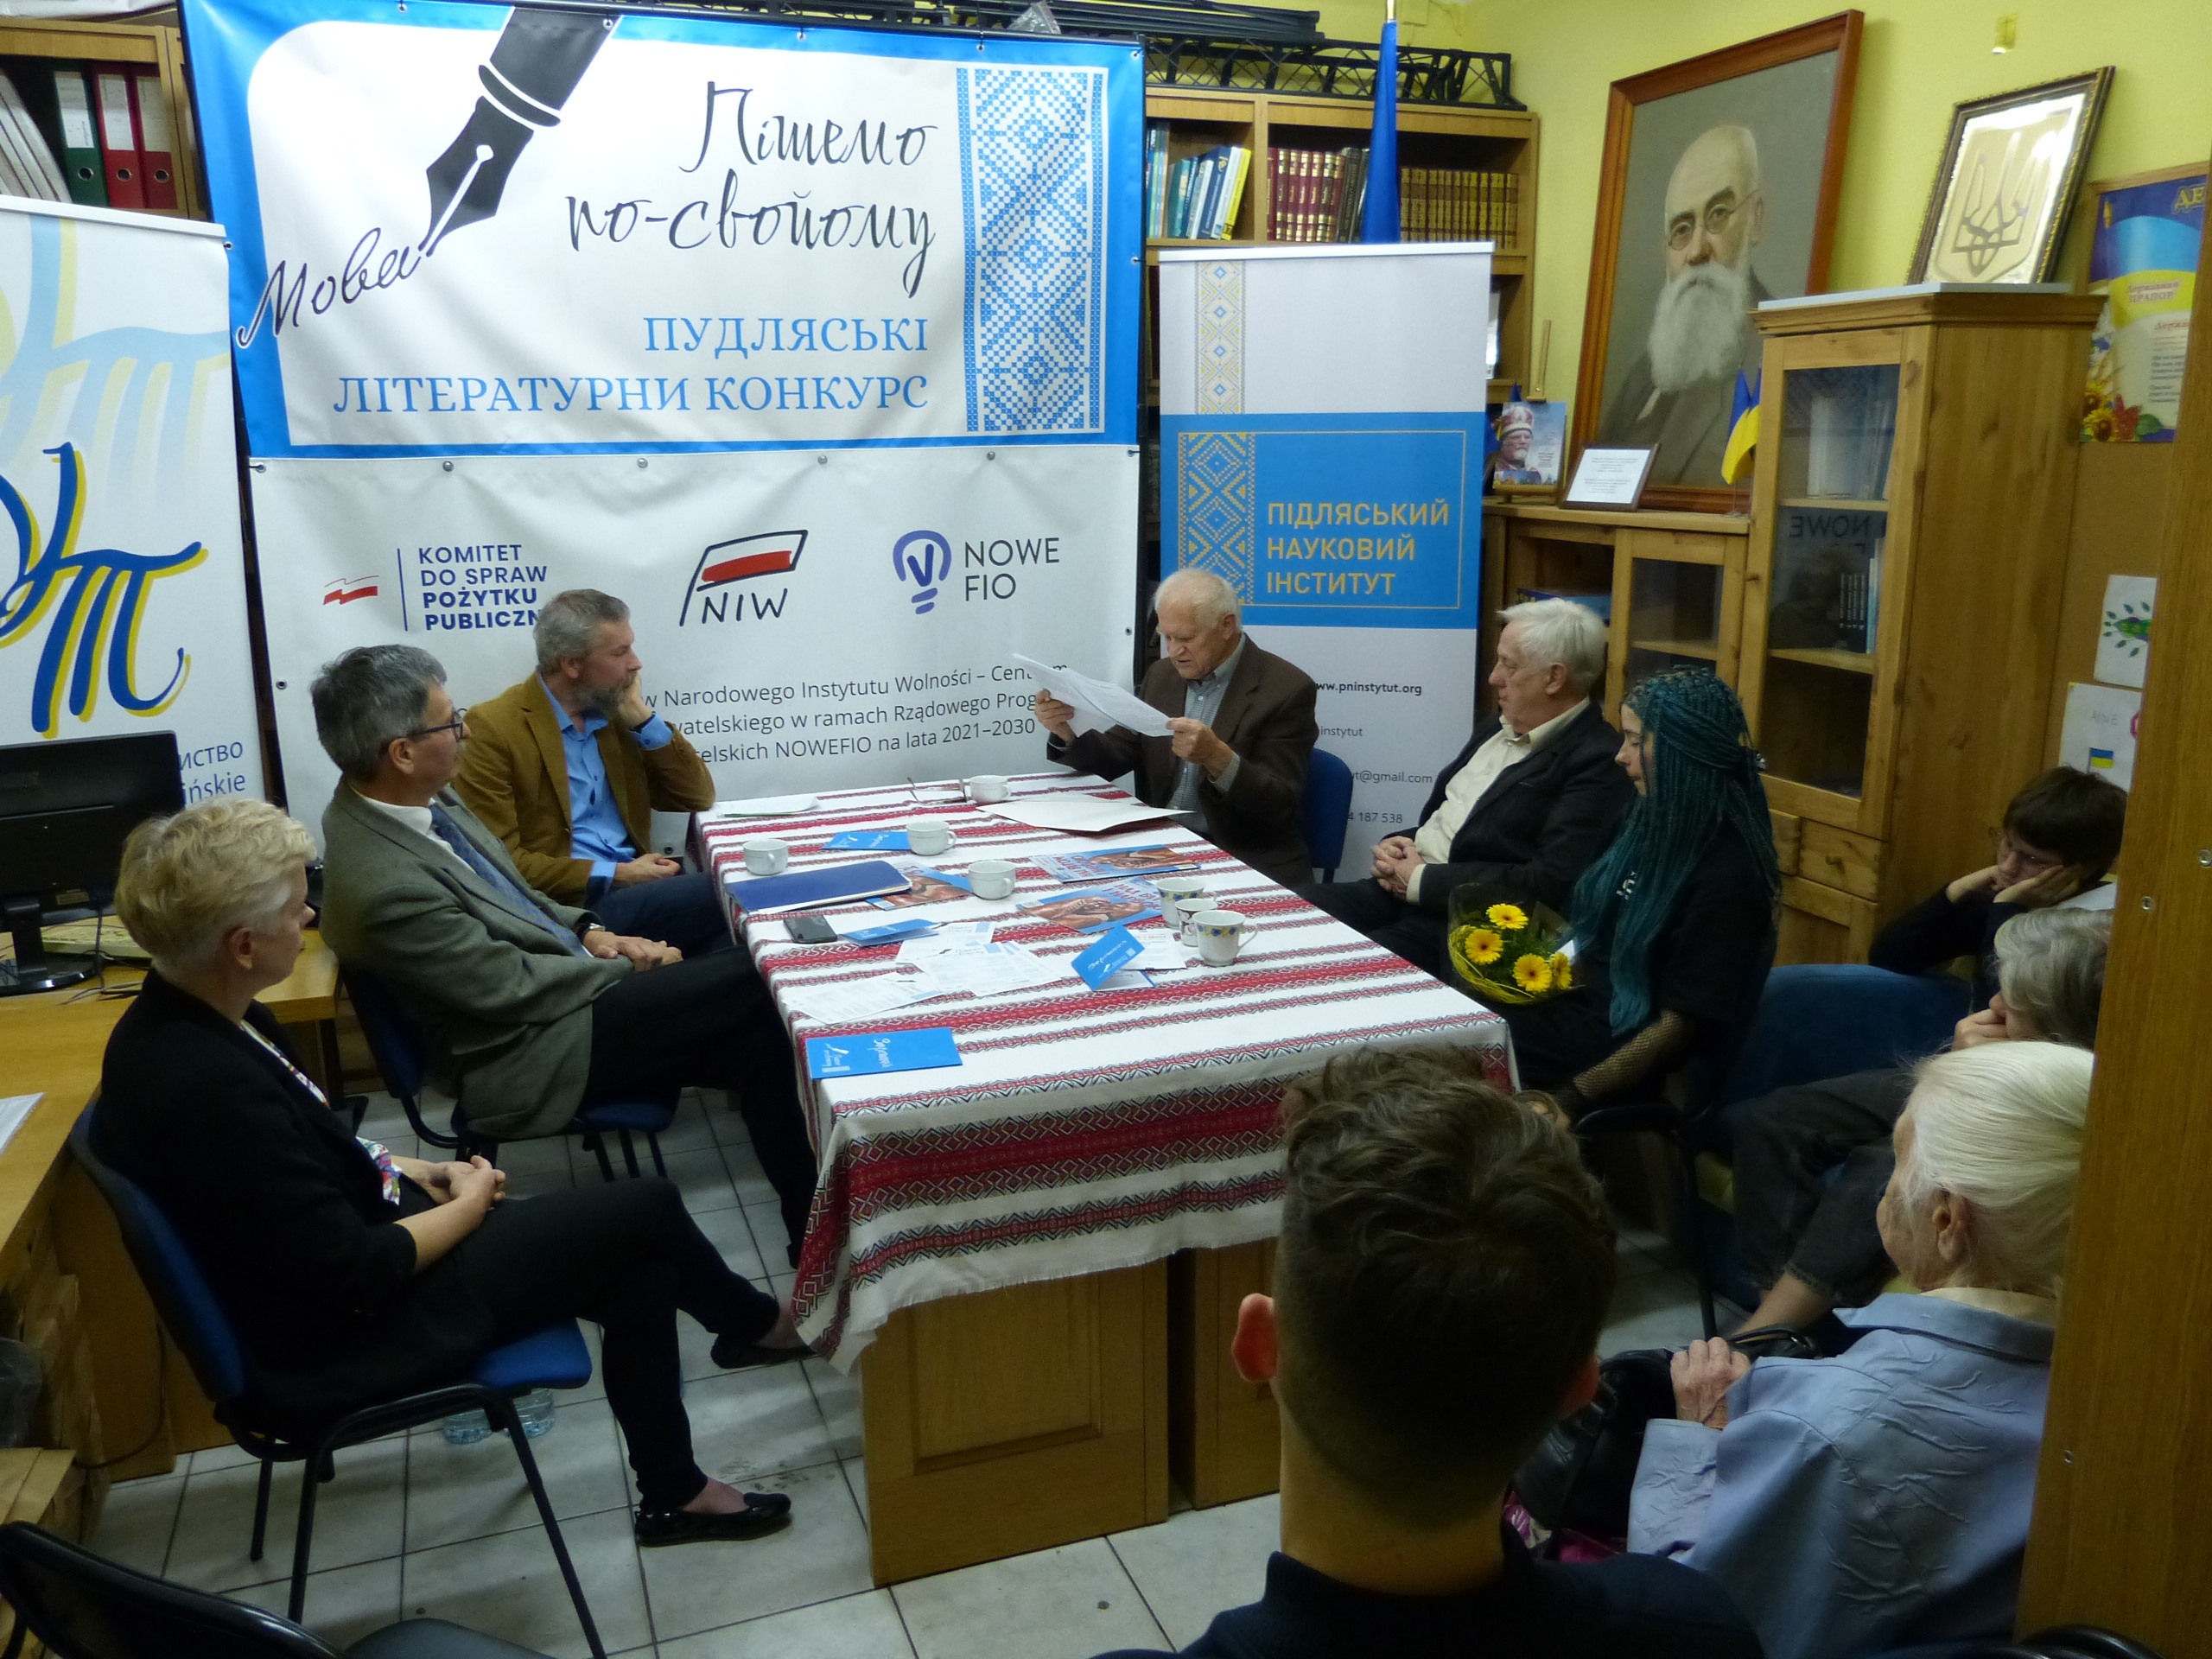 Spotkanie literackie z laureatem konkursu „Piszemo po swojomu” dr. Mikołajem Roszczenko